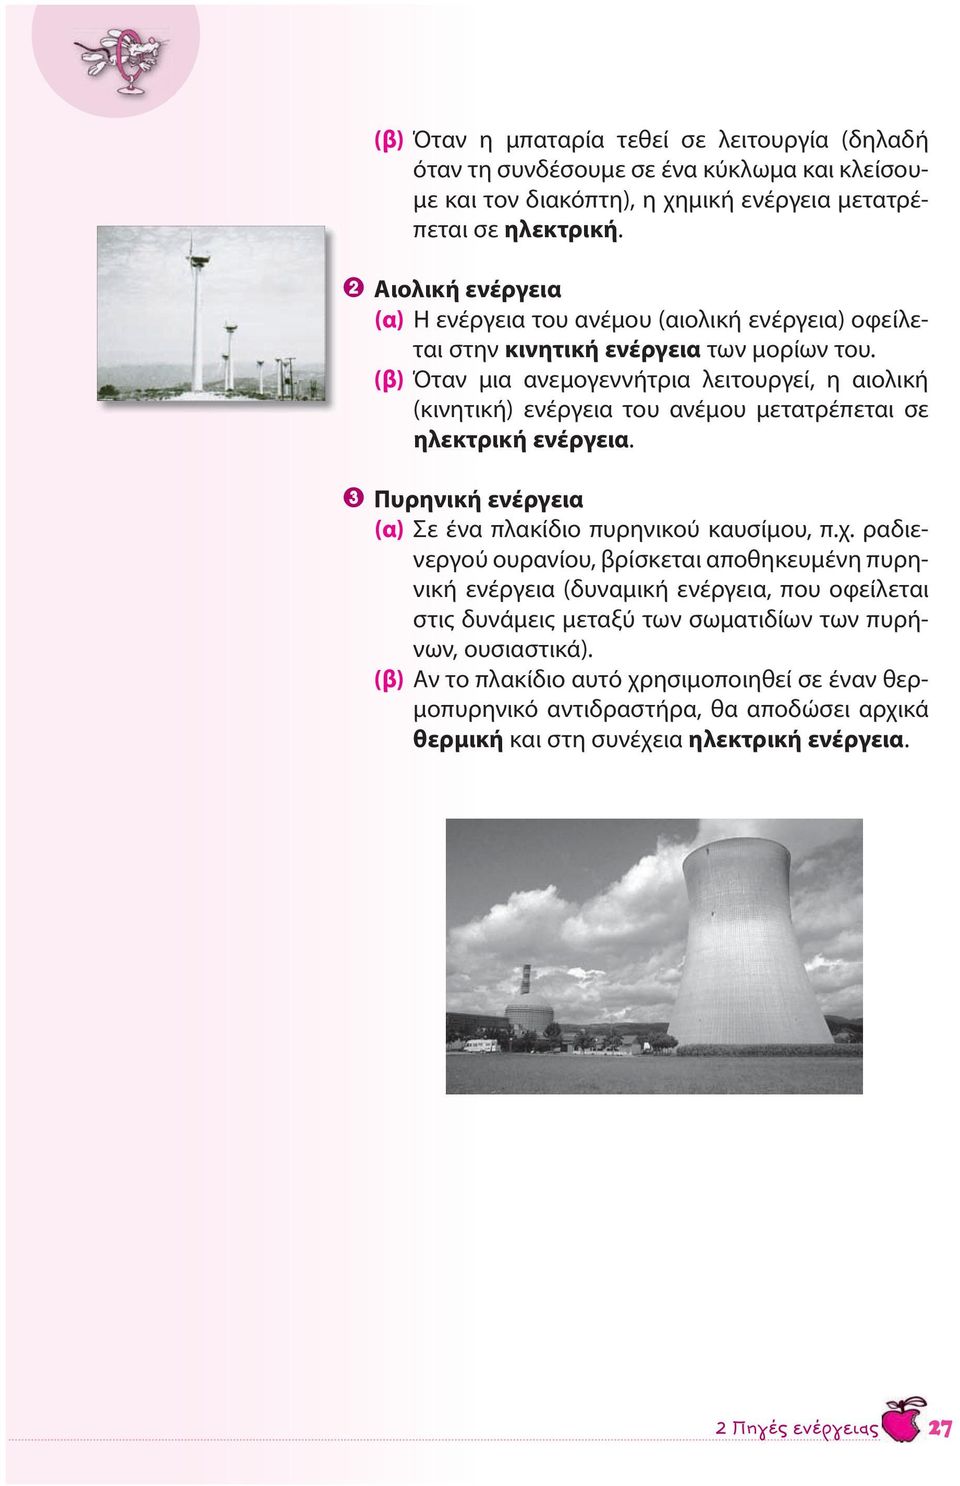 (β) Όταν μια ανεμογεννήτρια λειτουργεί, η αιολική (κινητική) ενέργεια του ανέμου μετατρέπεται σε ηλεκτρική ενέργεια. 3 Πυρηνική ενέργεια (α) Σε ένα πλακίδιο πυρηνικού καυσίμου, π.χ.